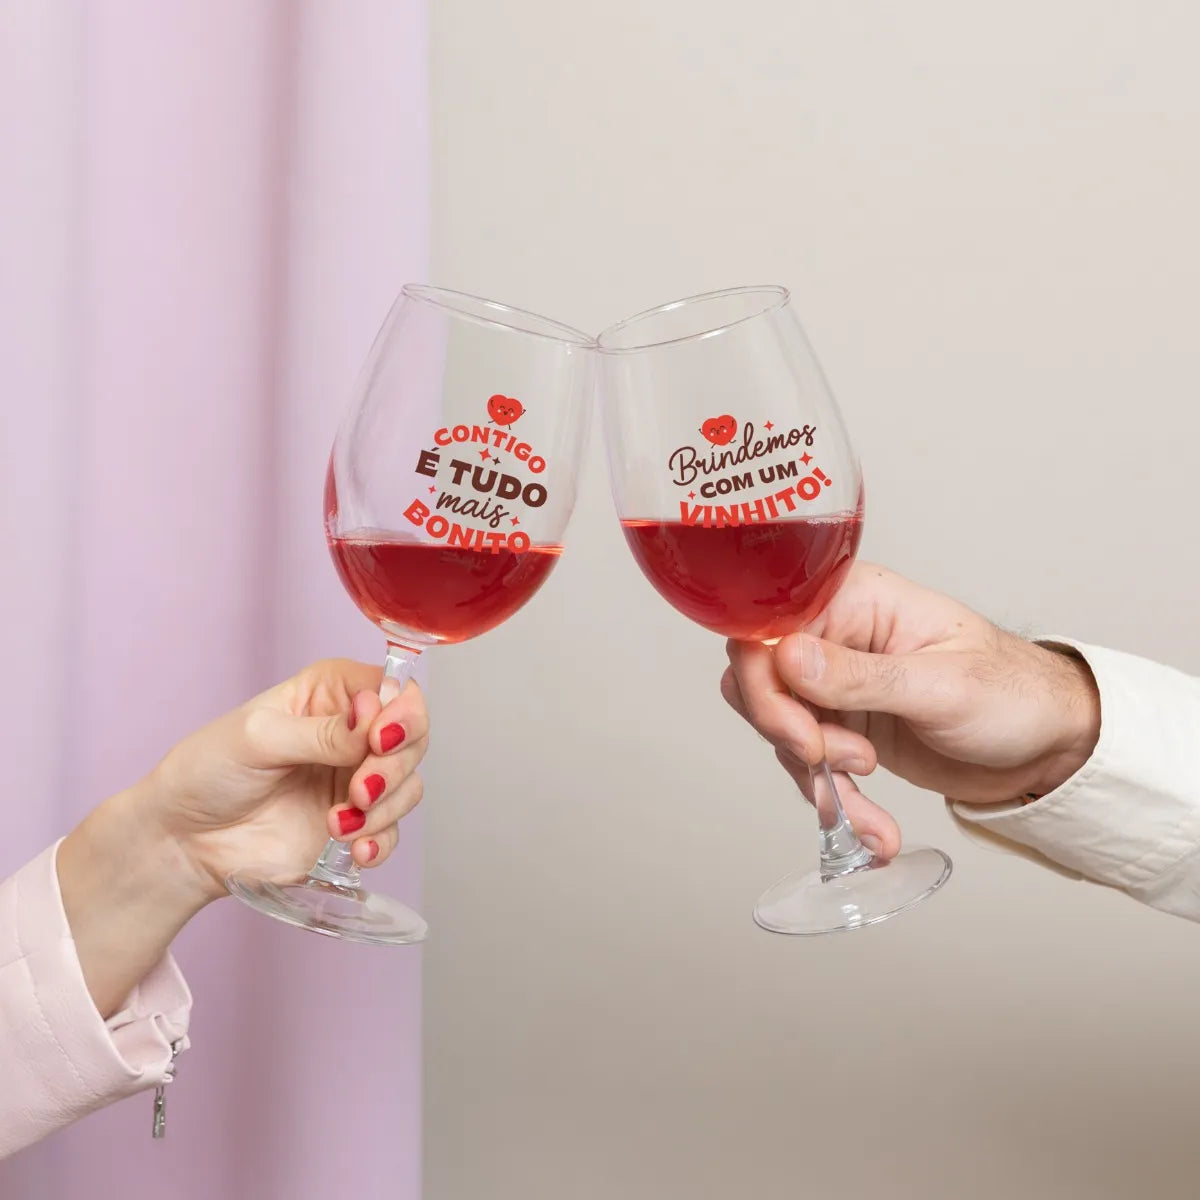 Kit de 2 copos de vinho - Contigo é tudo mais bonito. Brindemos com um vinhito!